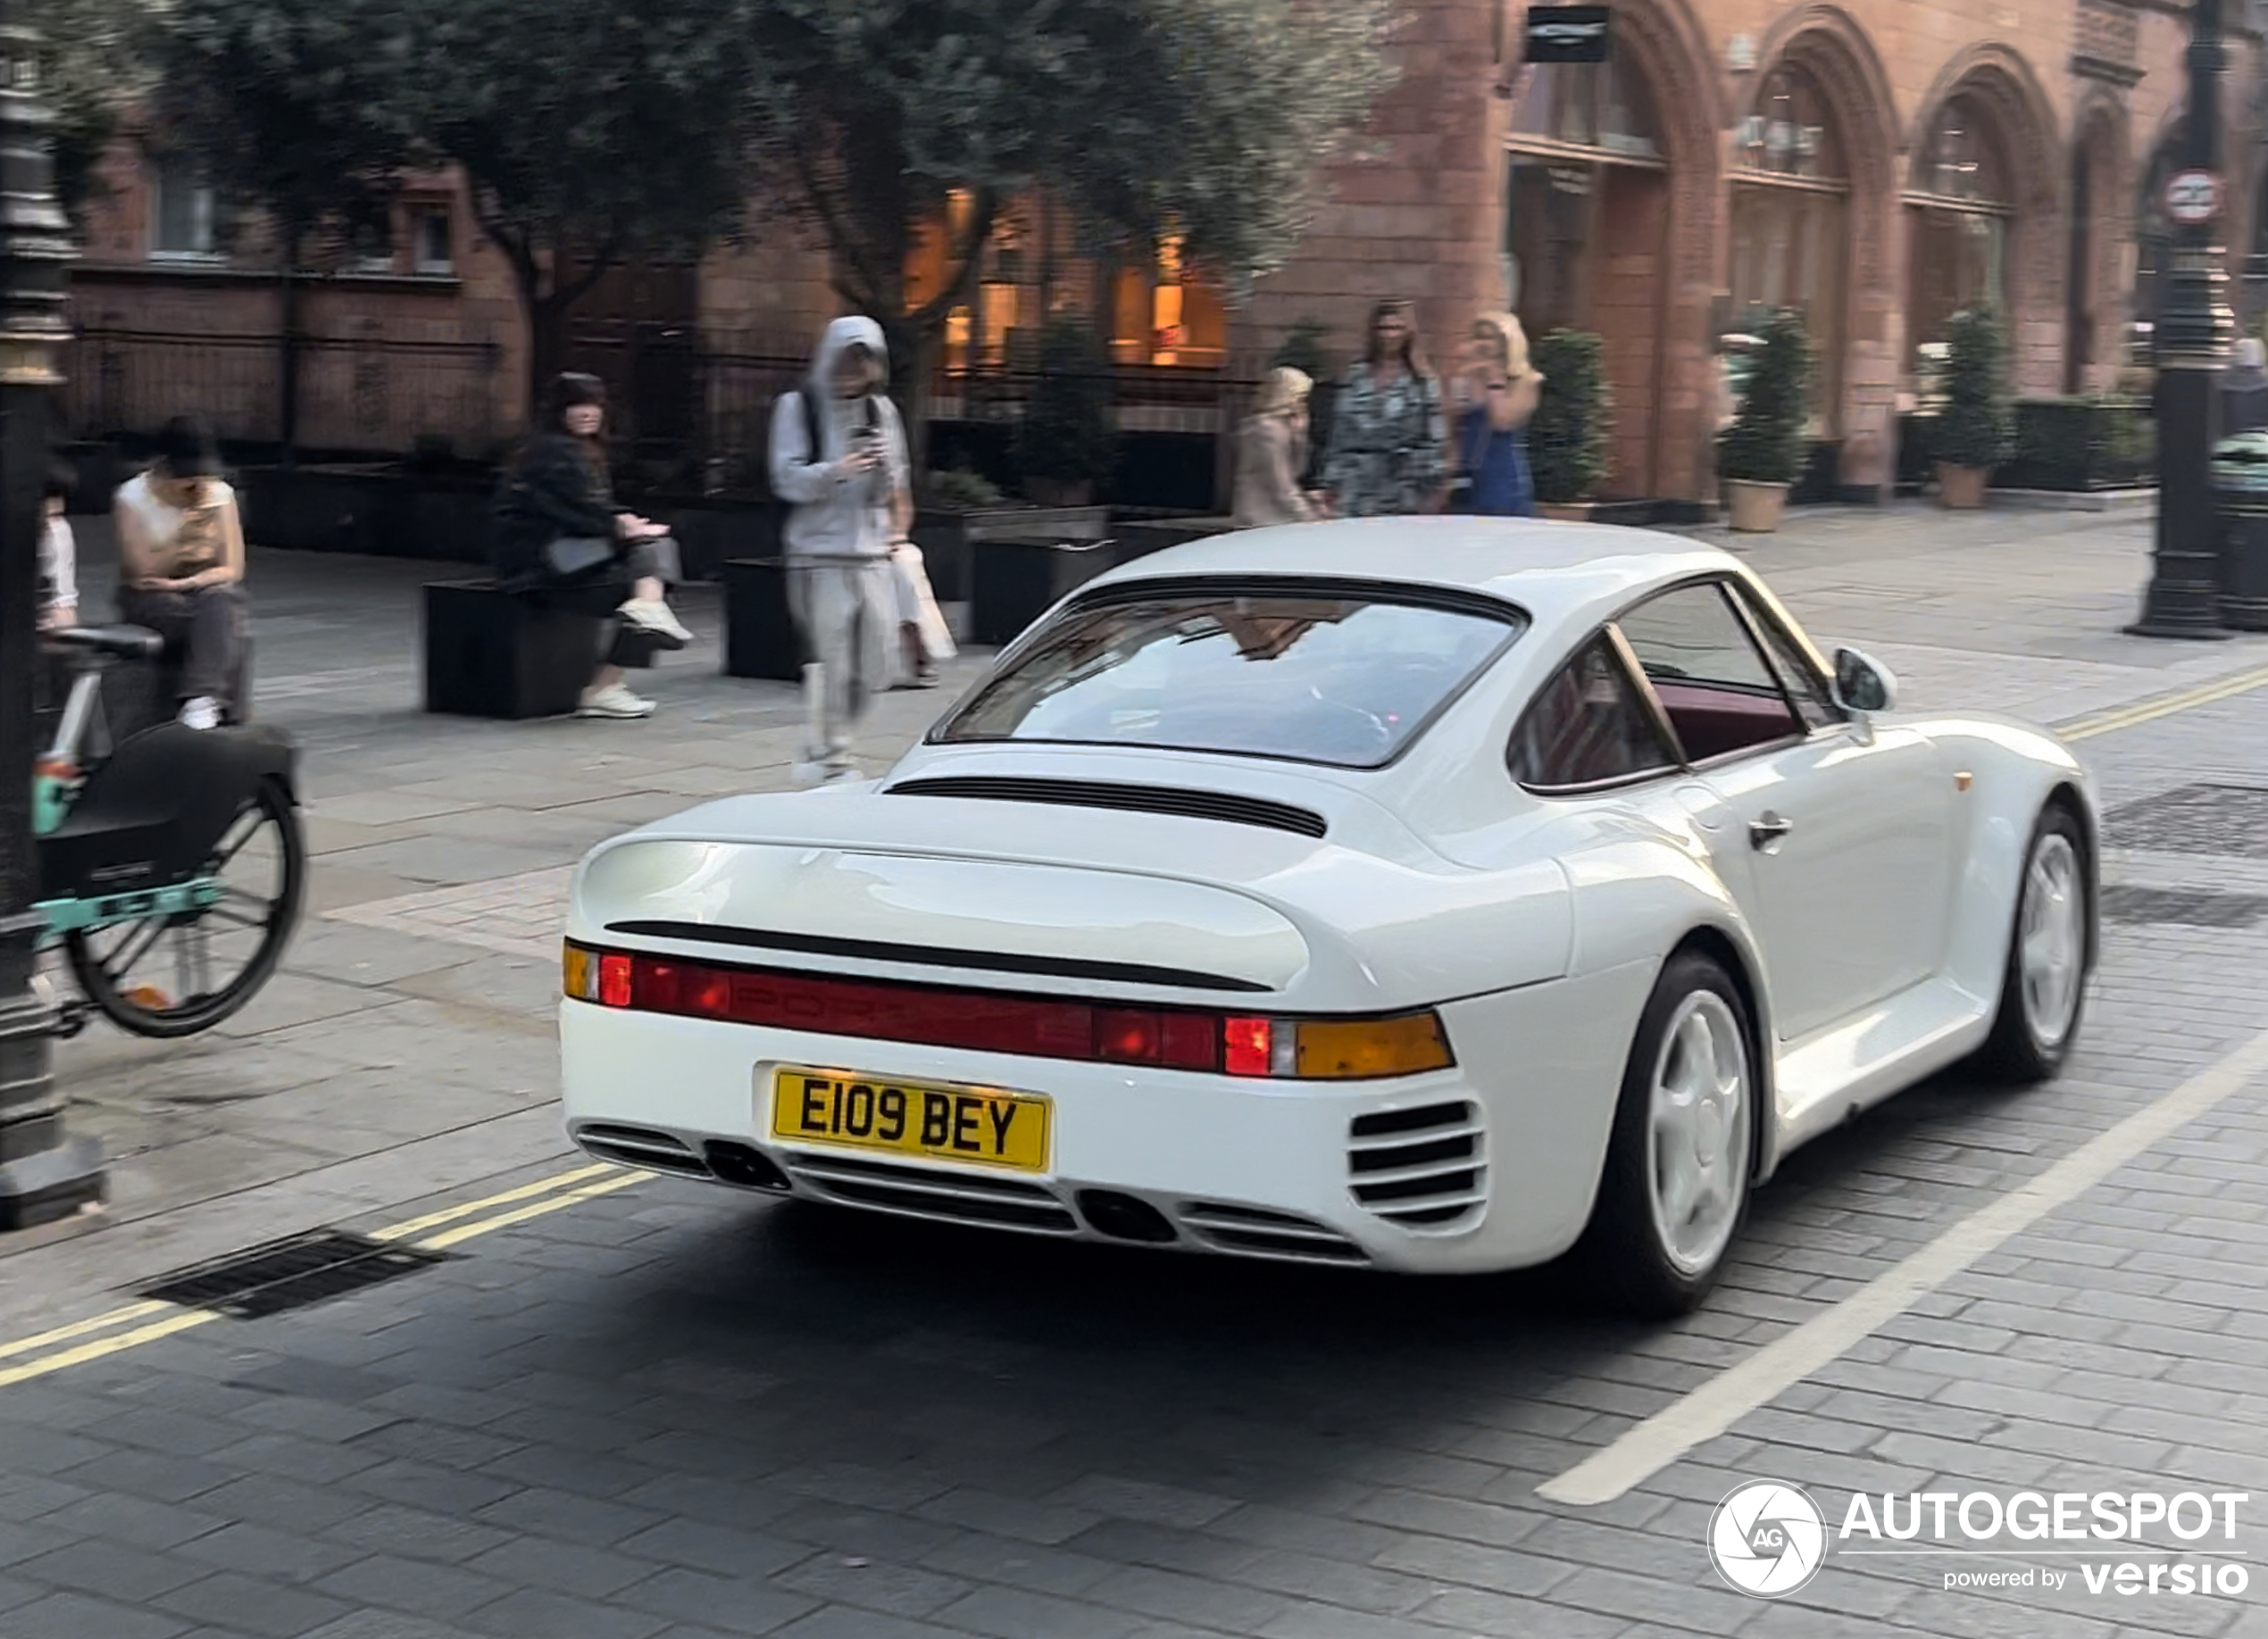 Da li ste ikada videli Porsche 959?